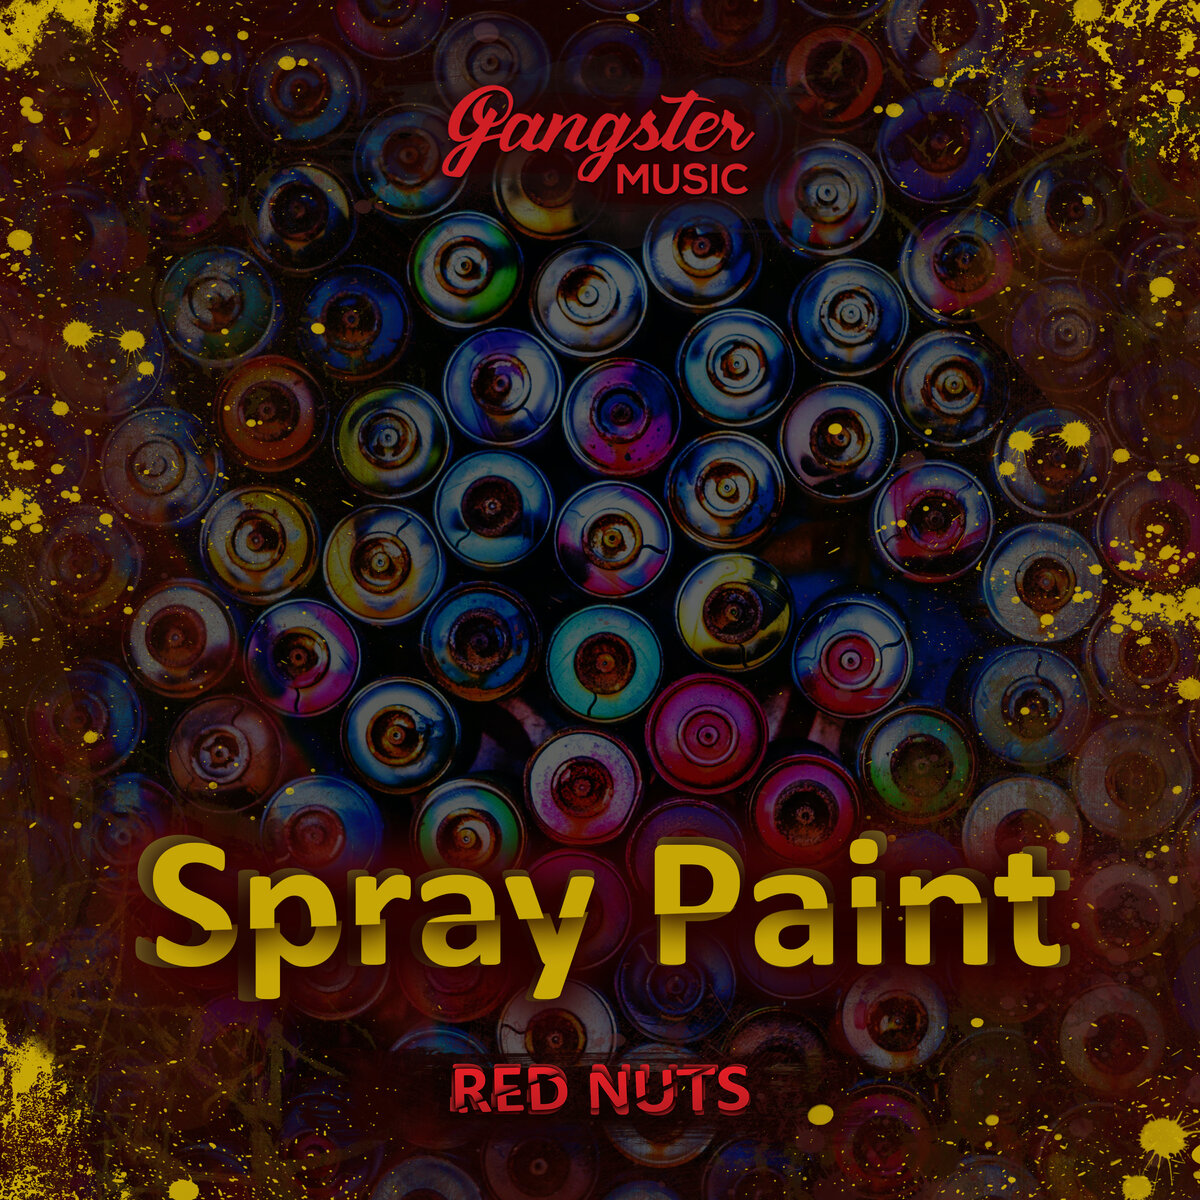 Release Time. Red Nuts. Spray Paint.

На лейбле Gangster Music вышел в свет мой новый сингл - Spray Paint и с сегодняшнего дня доступен на всех площадках.